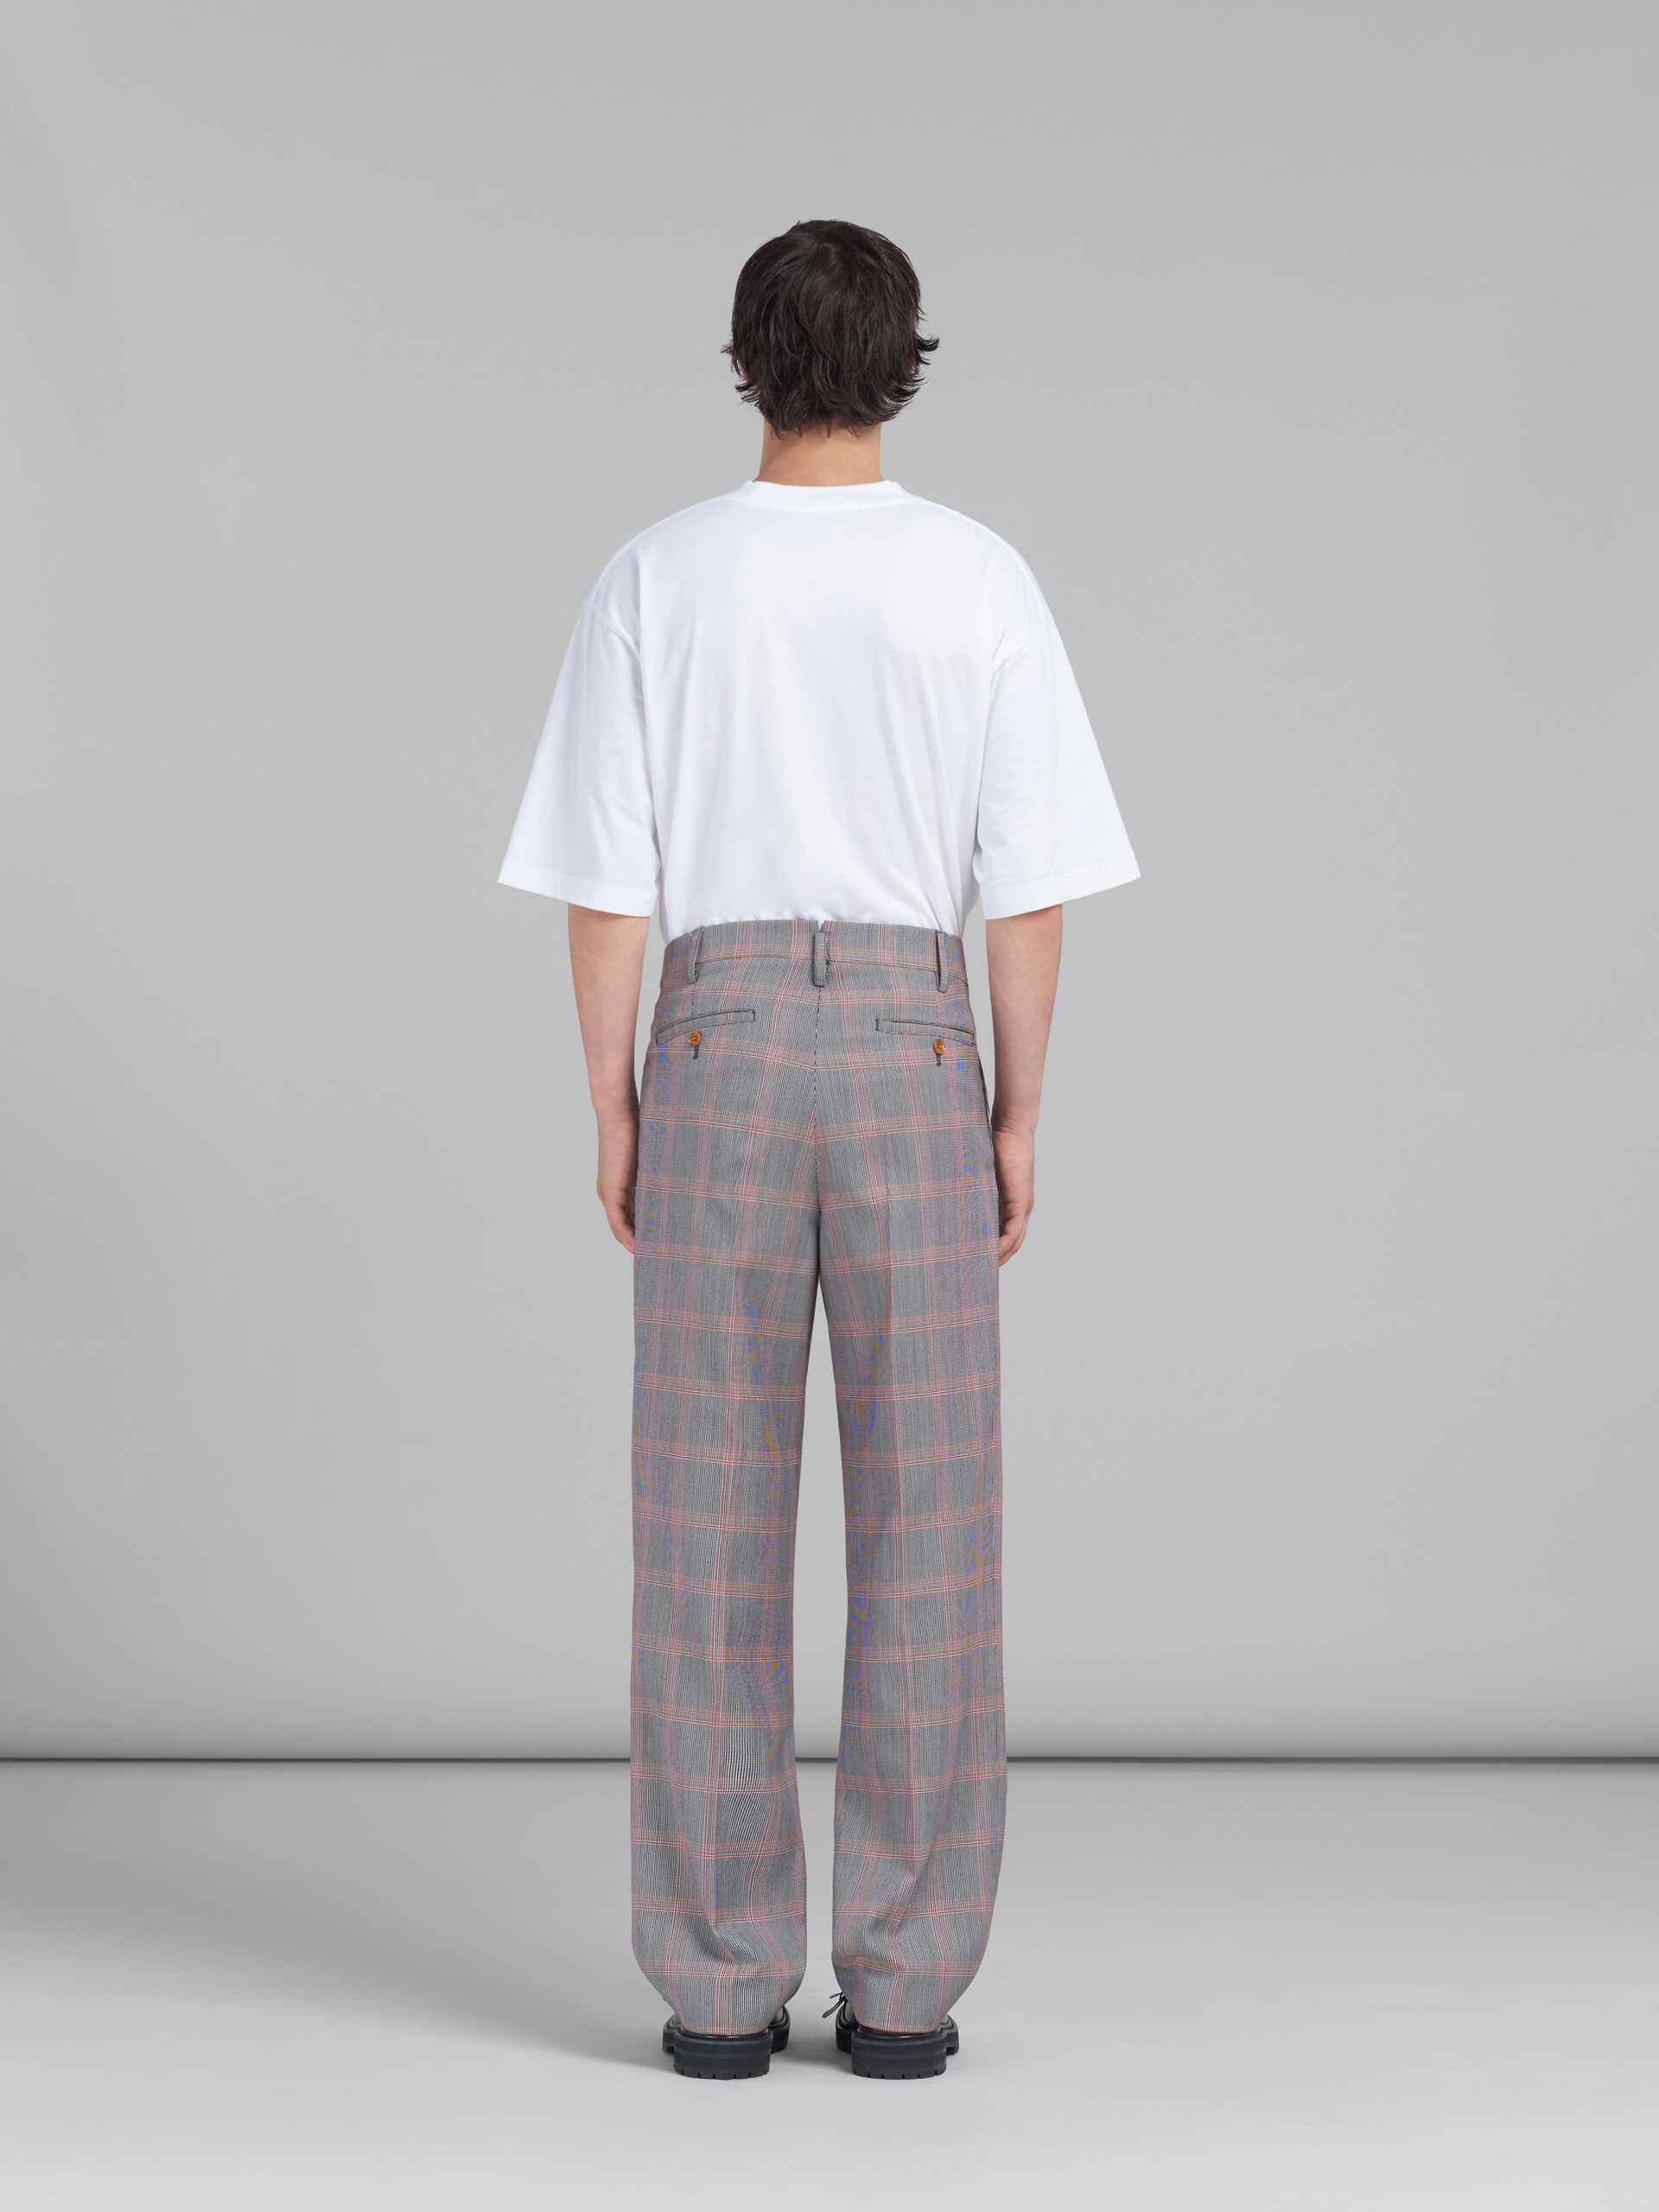 Pantaloni chino in lana tecnica con motivo check arancione - Pantaloni - Image 3